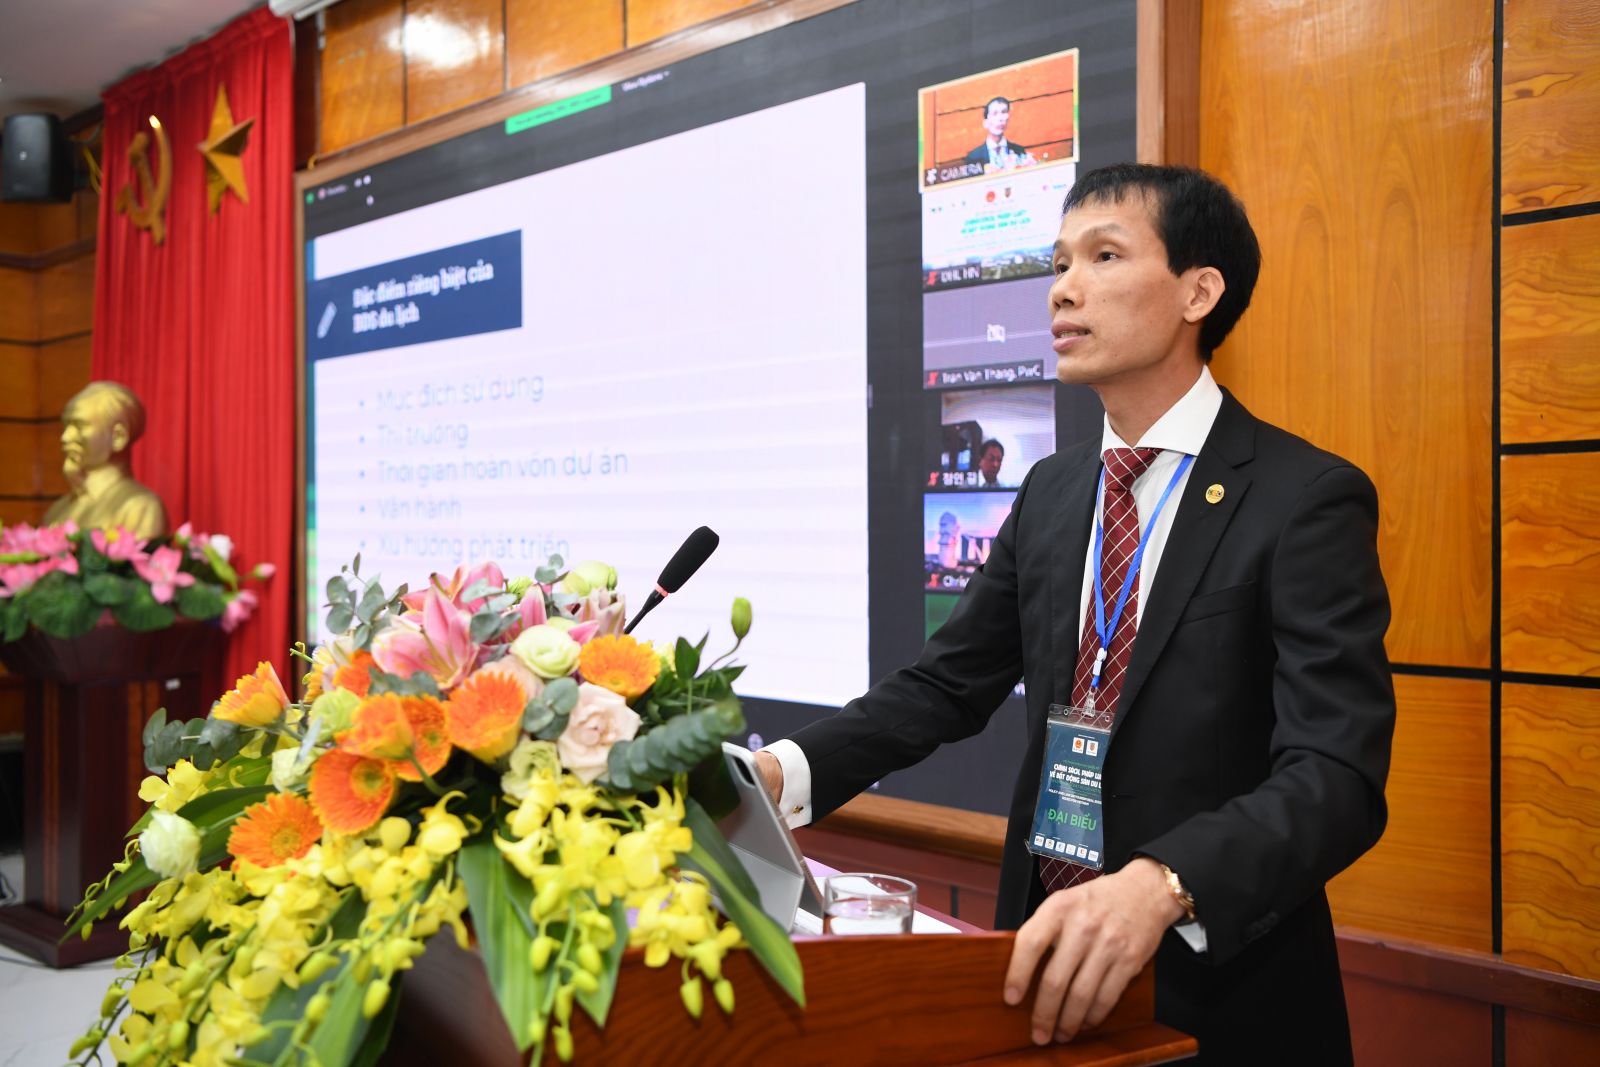 Ông Đoàn Văn Bình, Phó Chủ tịch Hiệp hội Bất động sản Việt Nam trình bày tham luận